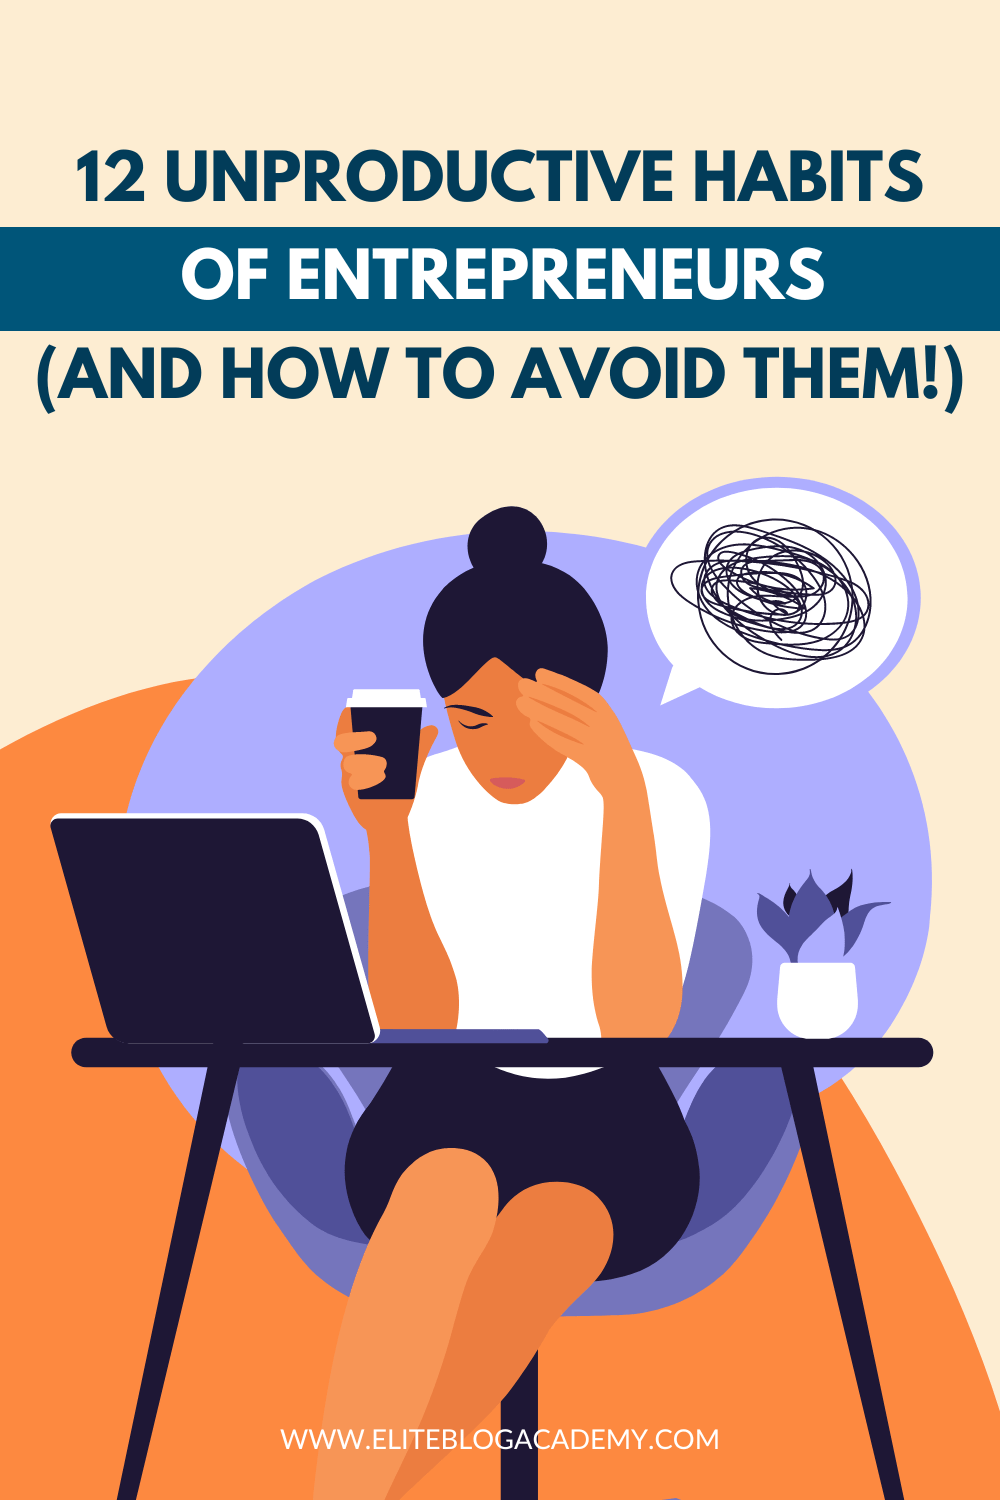 12 Unproductive Habits of Entrepreneurs